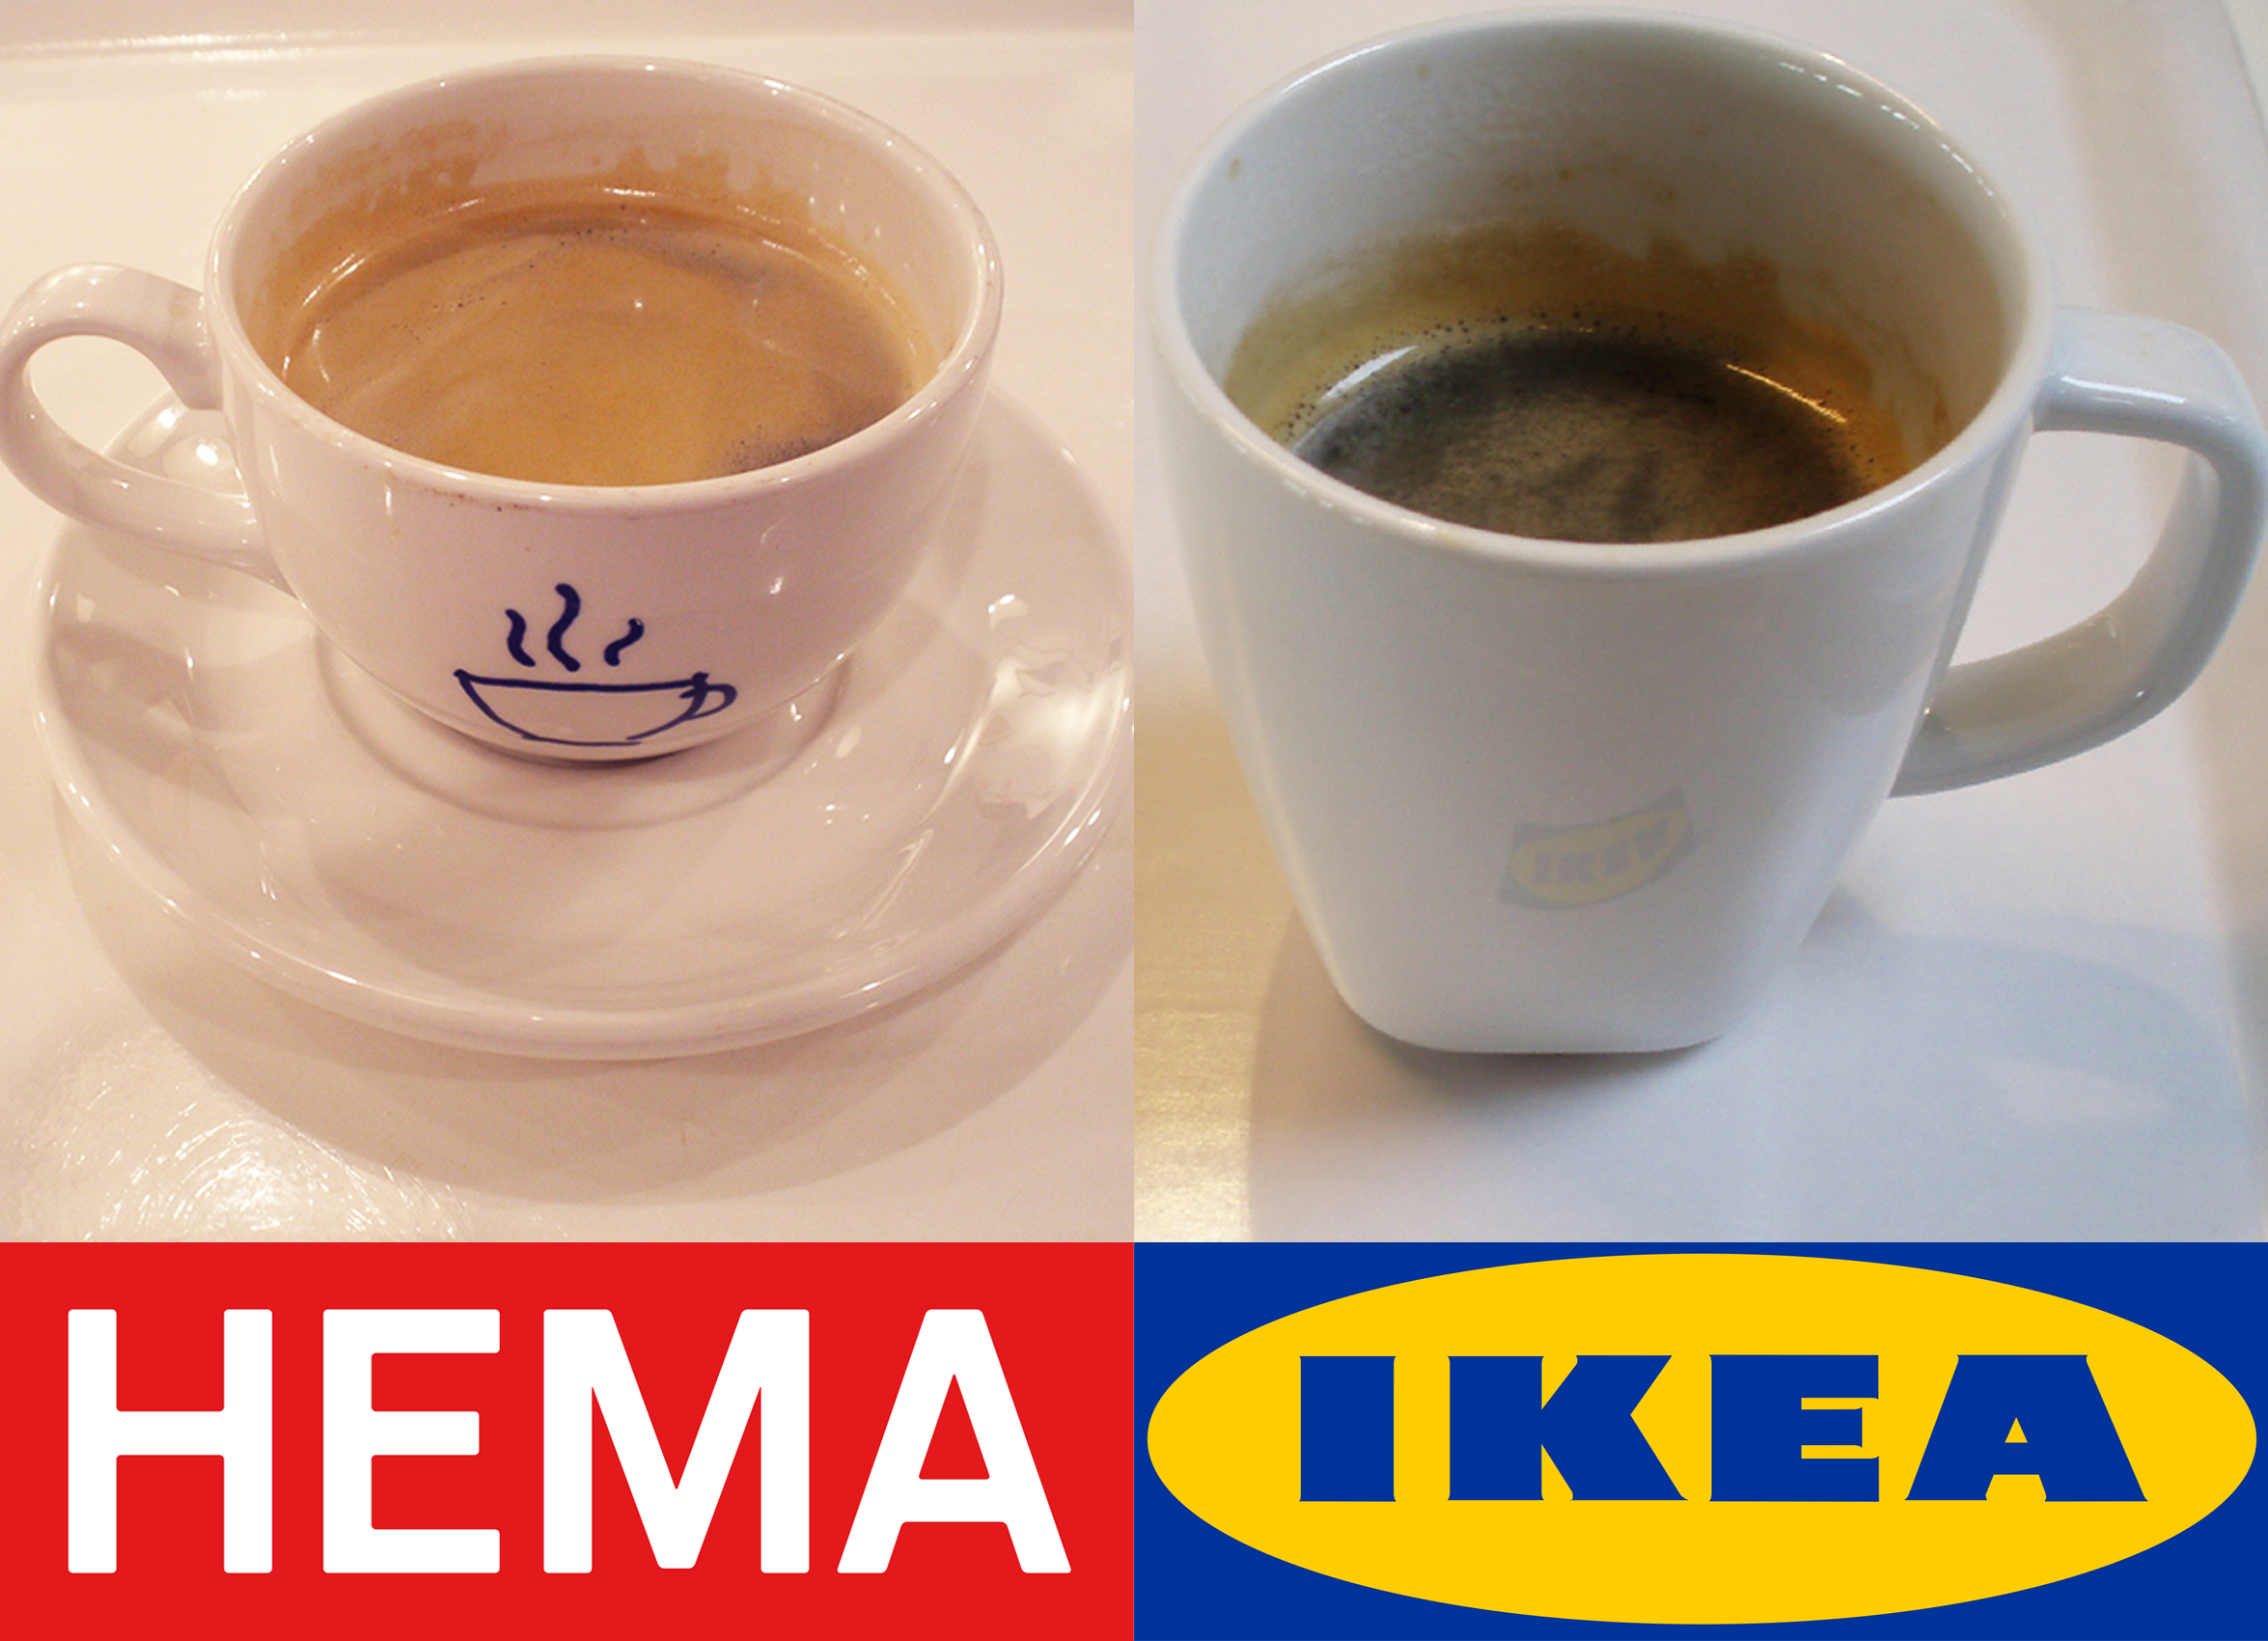 academisch Intimidatie moersleutel De nieuwe koffie van IKEA smaakt beter dan die van de HEMA